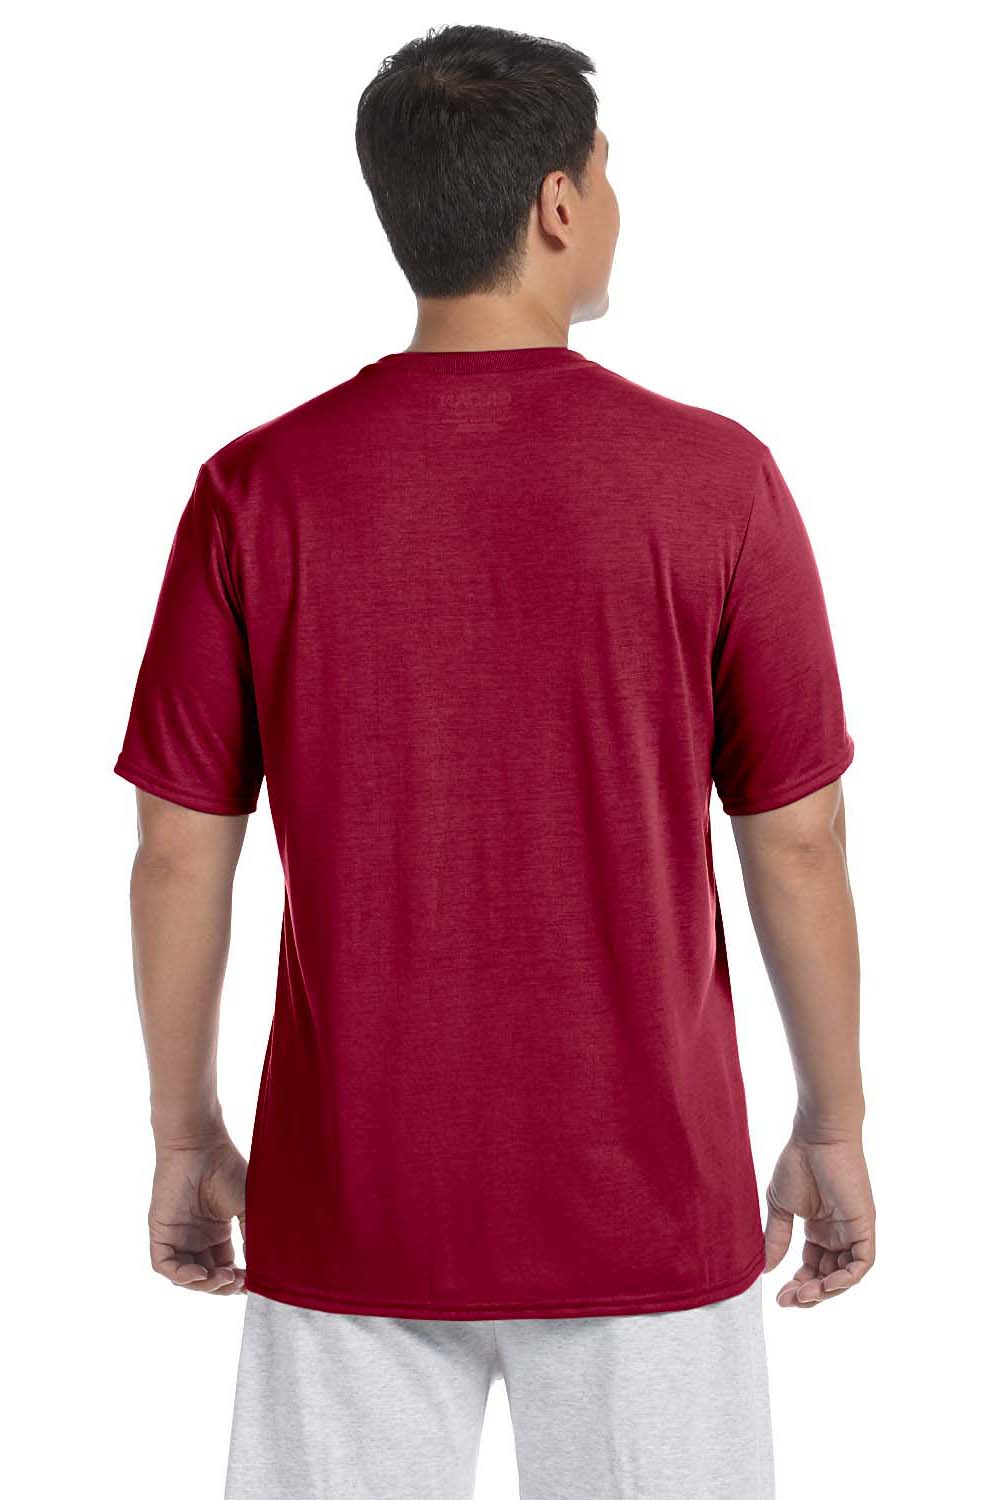 Gildan G420 Mens Performance Jersey Moisture Wicking Short Sleeve Crewneck T-Shirt Cardinal Red Back